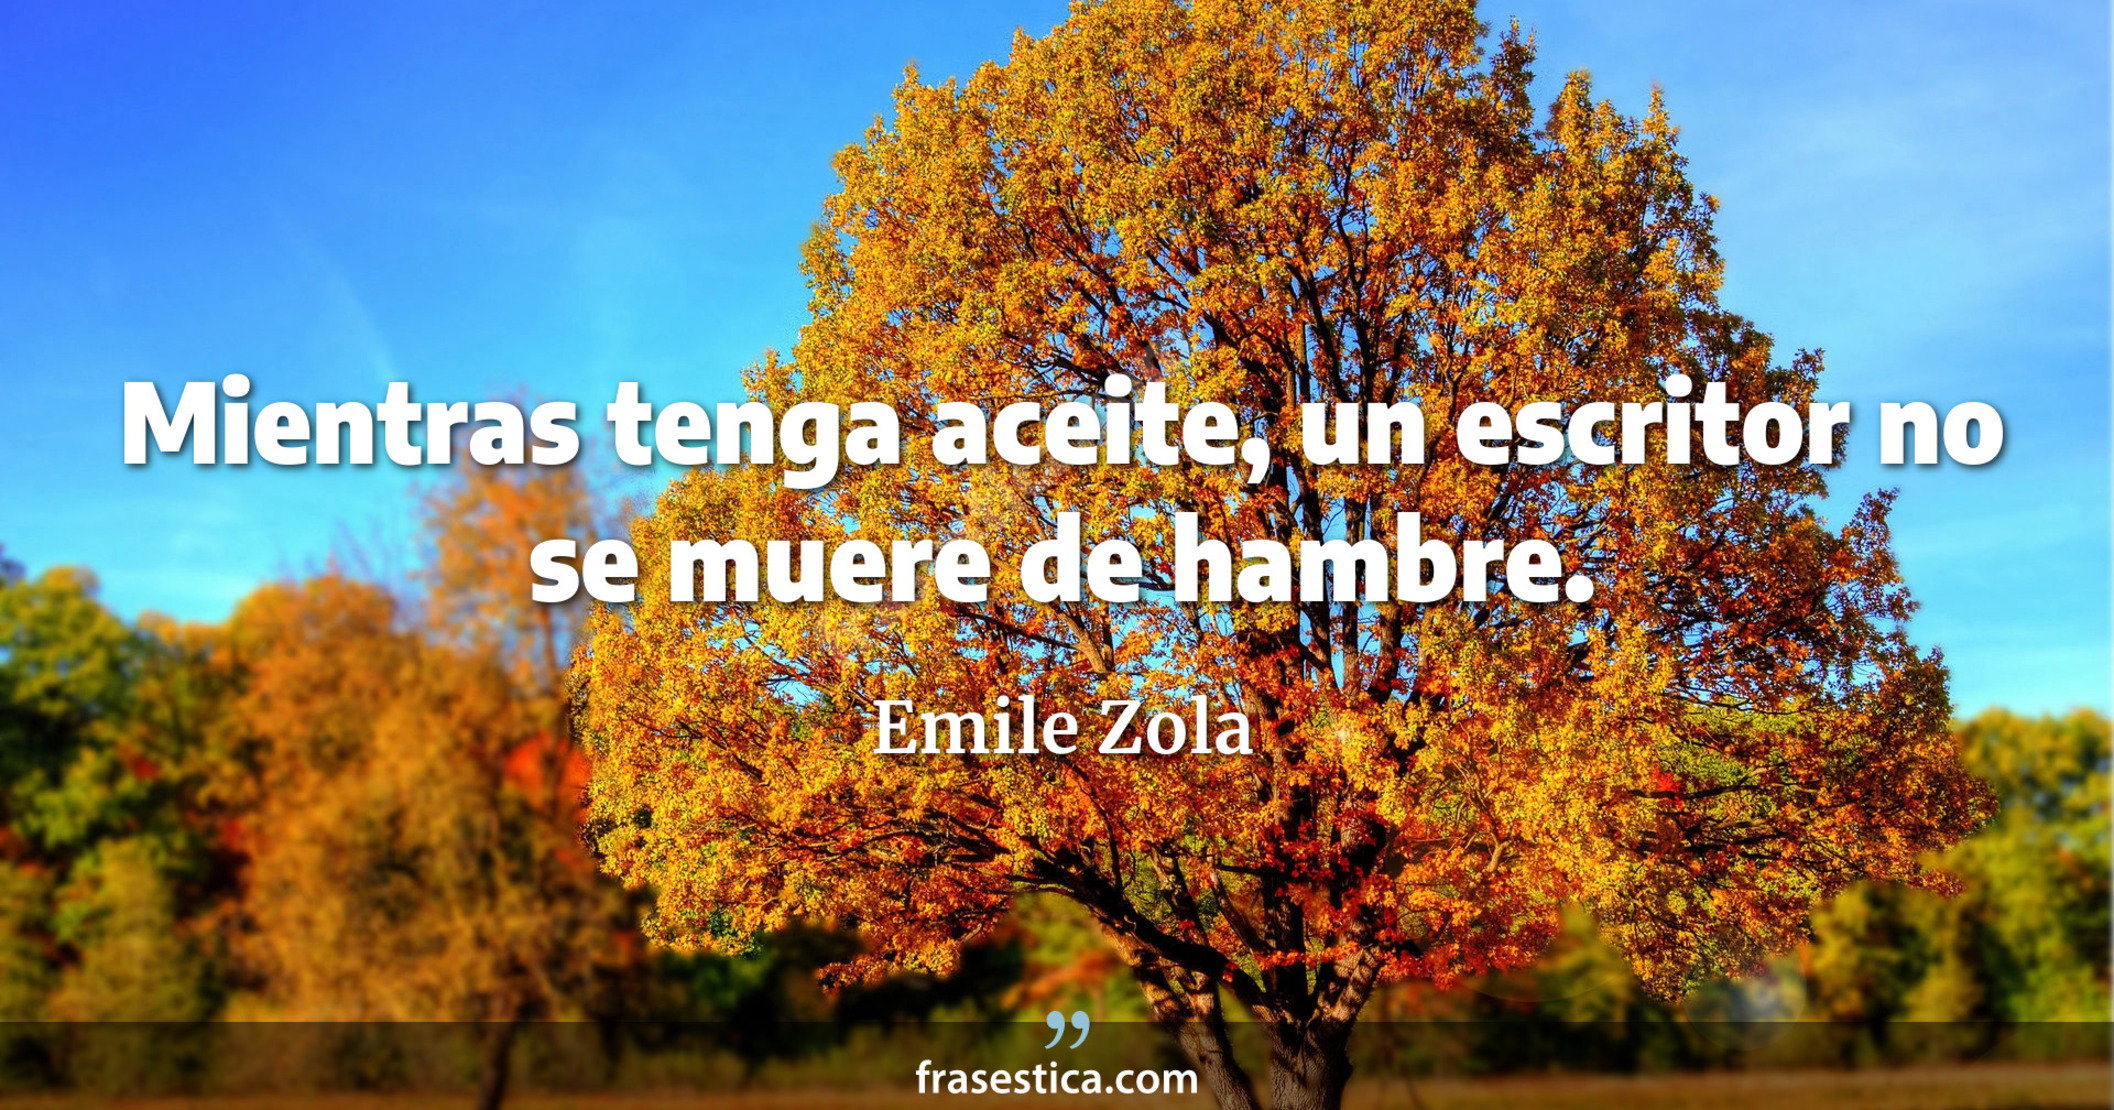 Mientras tenga aceite, un escritor no se muere de hambre. - Emile Zola